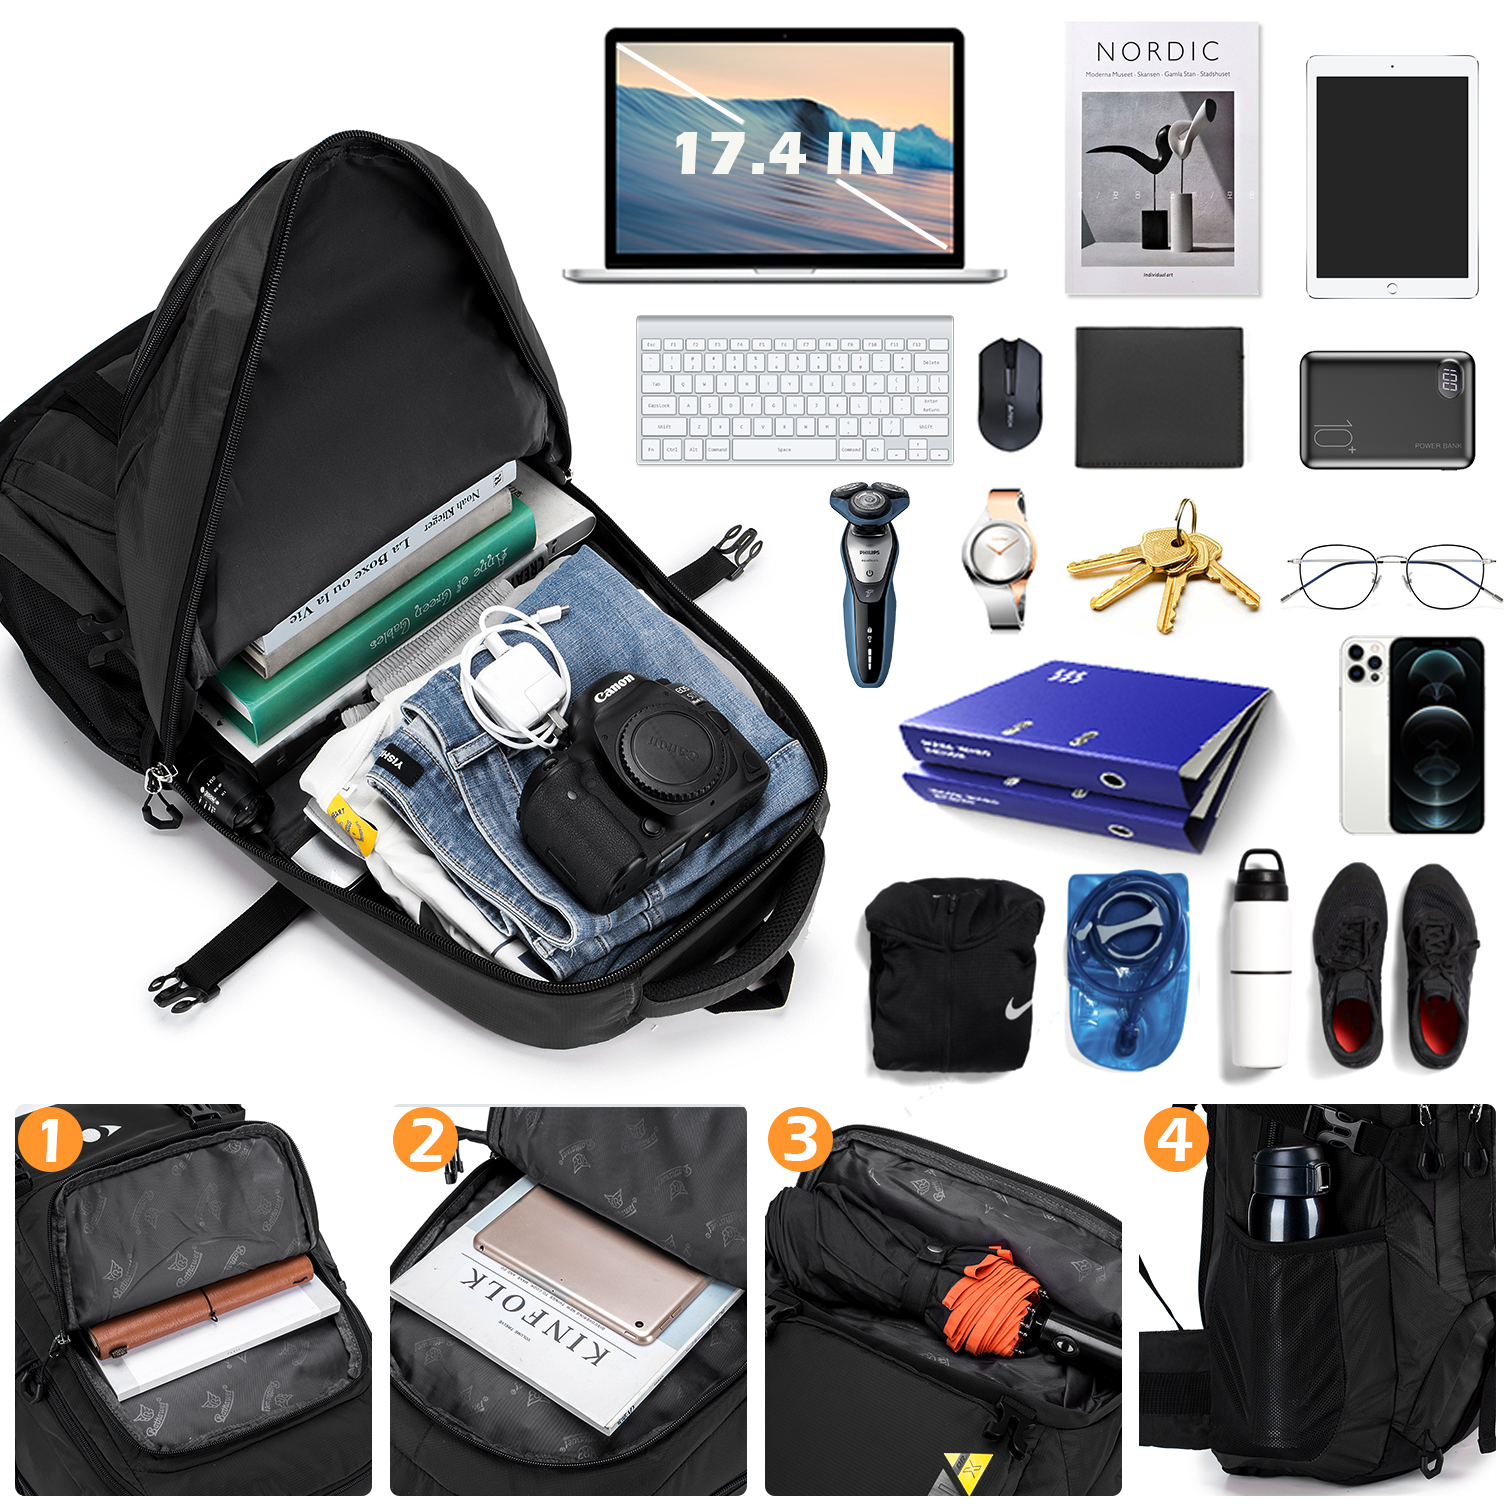 BAGZY Travel Backpack 70L Trekking Backpack Laptop Backpack 15.6 inch Large Cabin Bag Rucksack Cabin Hand Luggage Suitcase Daypack Travel Bag (Black) - image 3 of 6